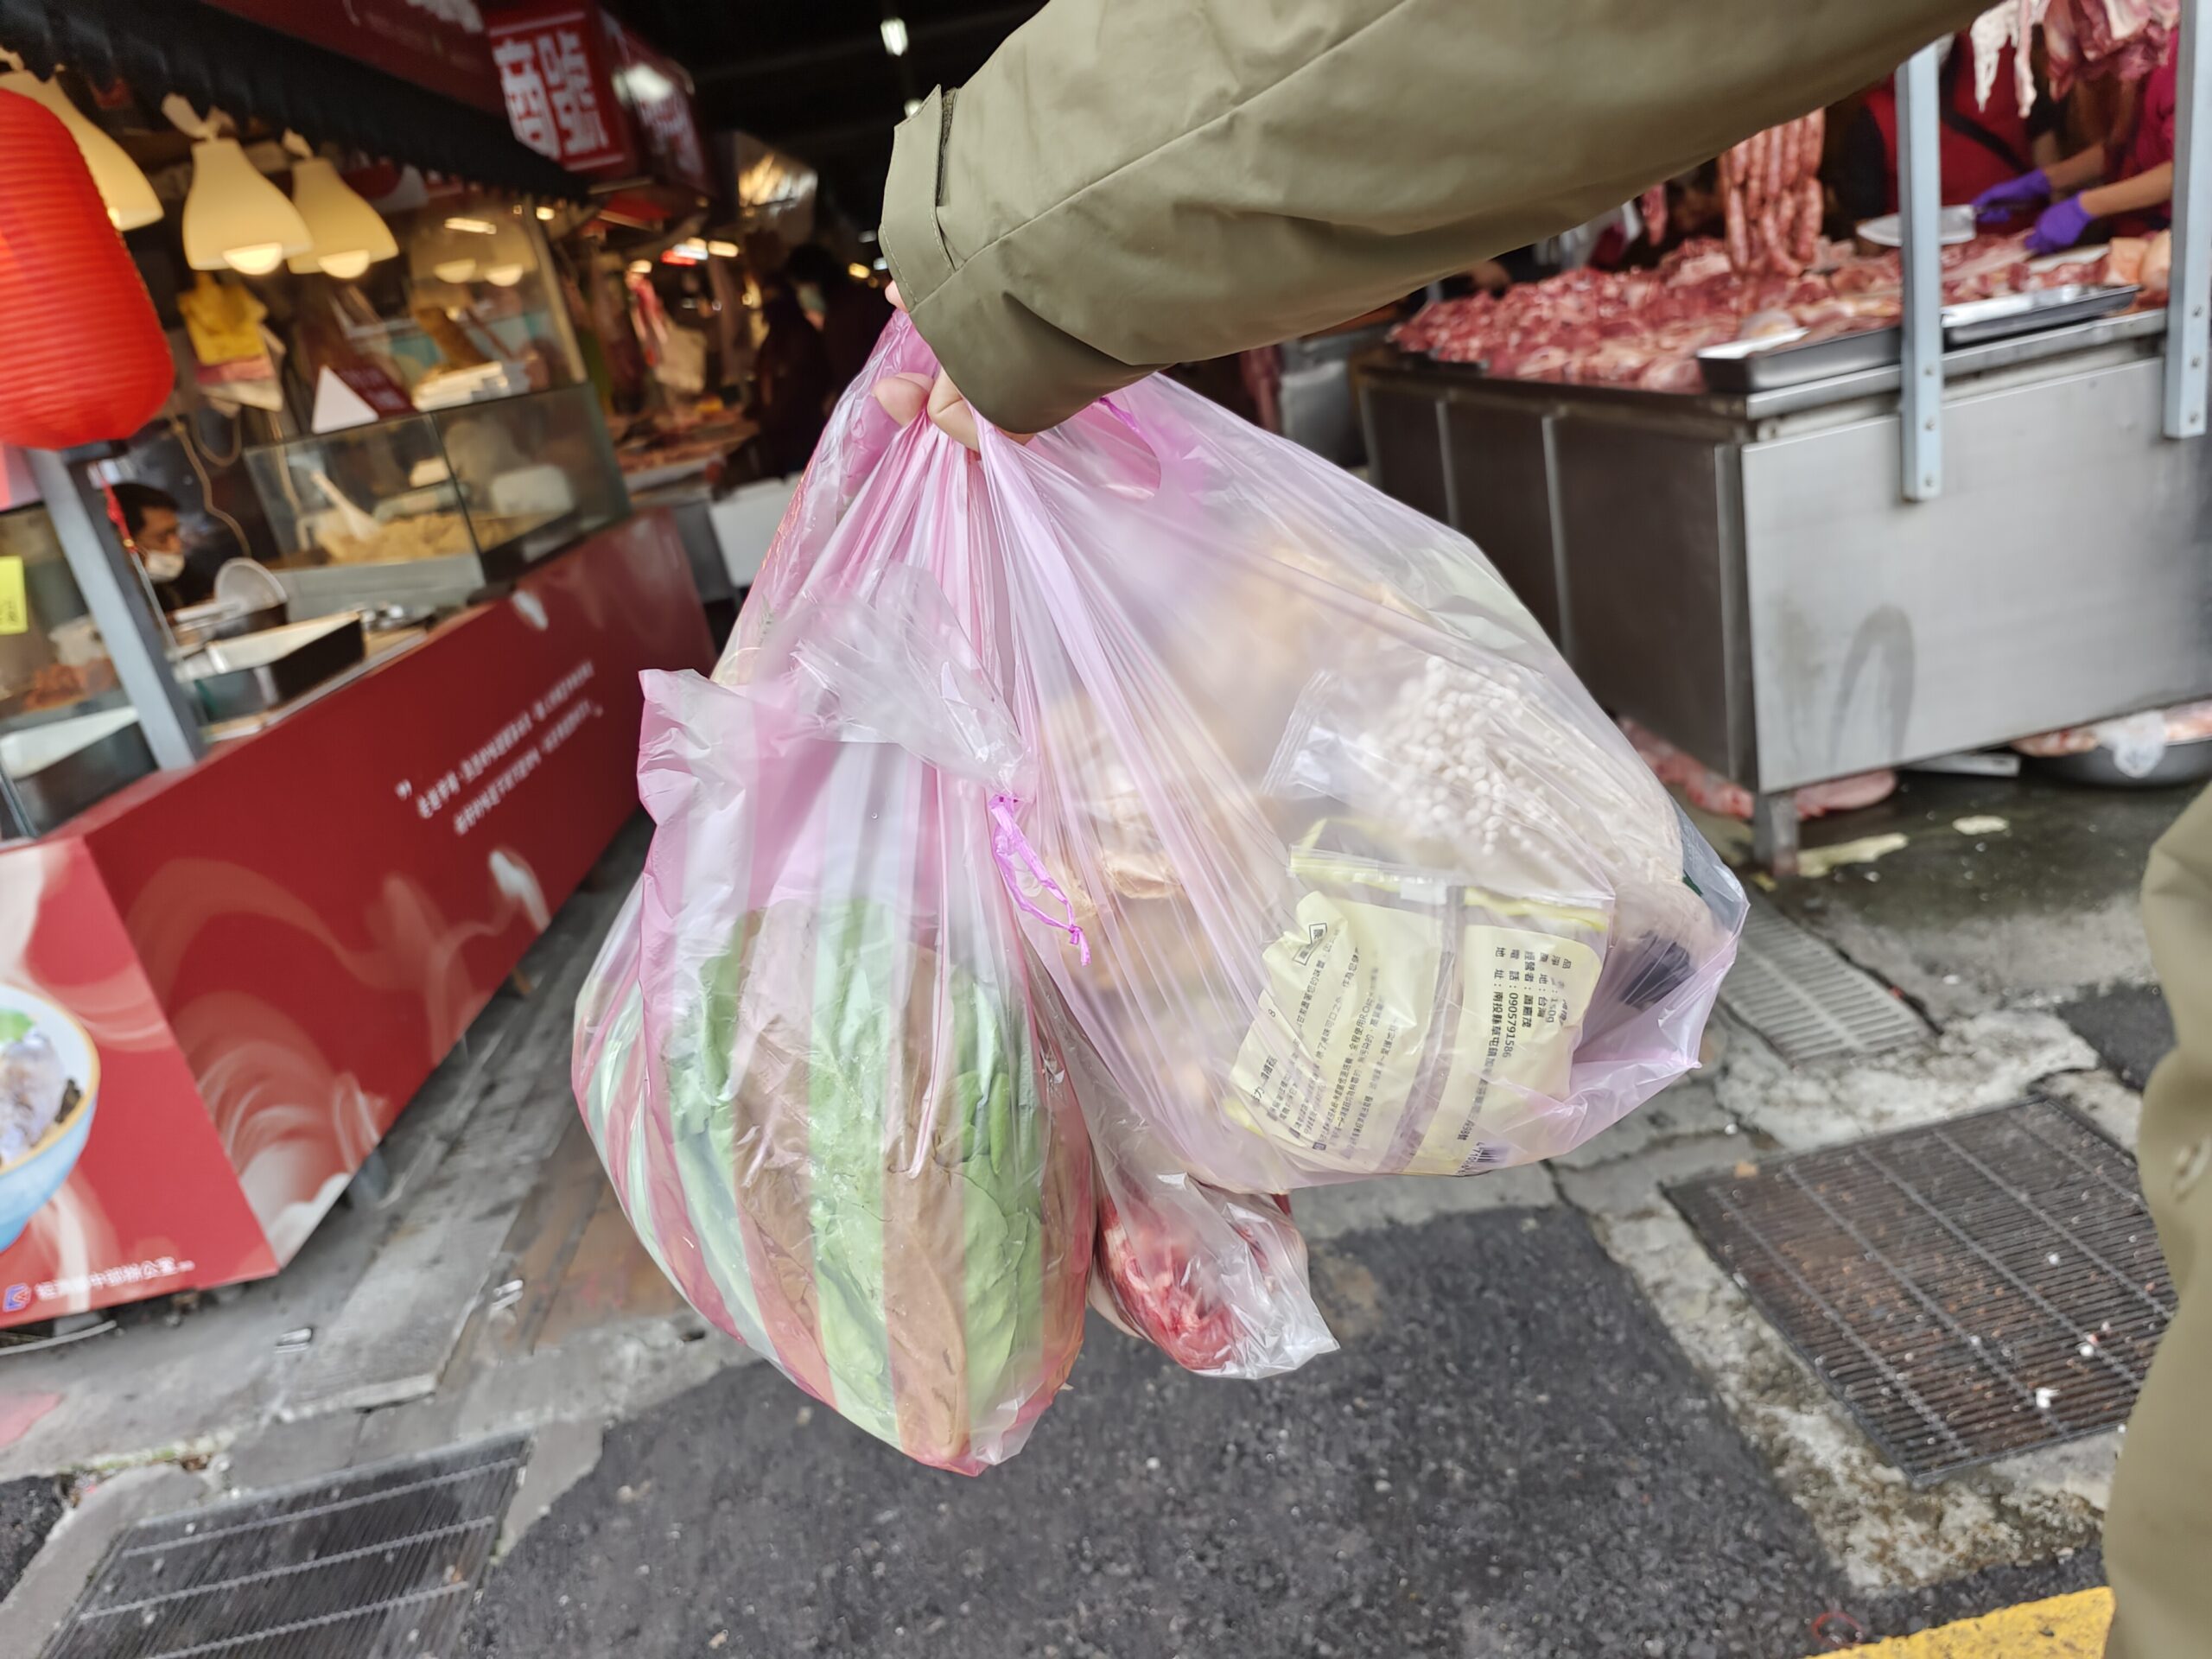 花蓮菜市場「重慶市場」豬肉攤推薦「五路發豬肉店」低溫冷藏價格透明，還有提供花蓮酒糟豬。賀田菇菇的鋪子，花蓮買香菇找這家